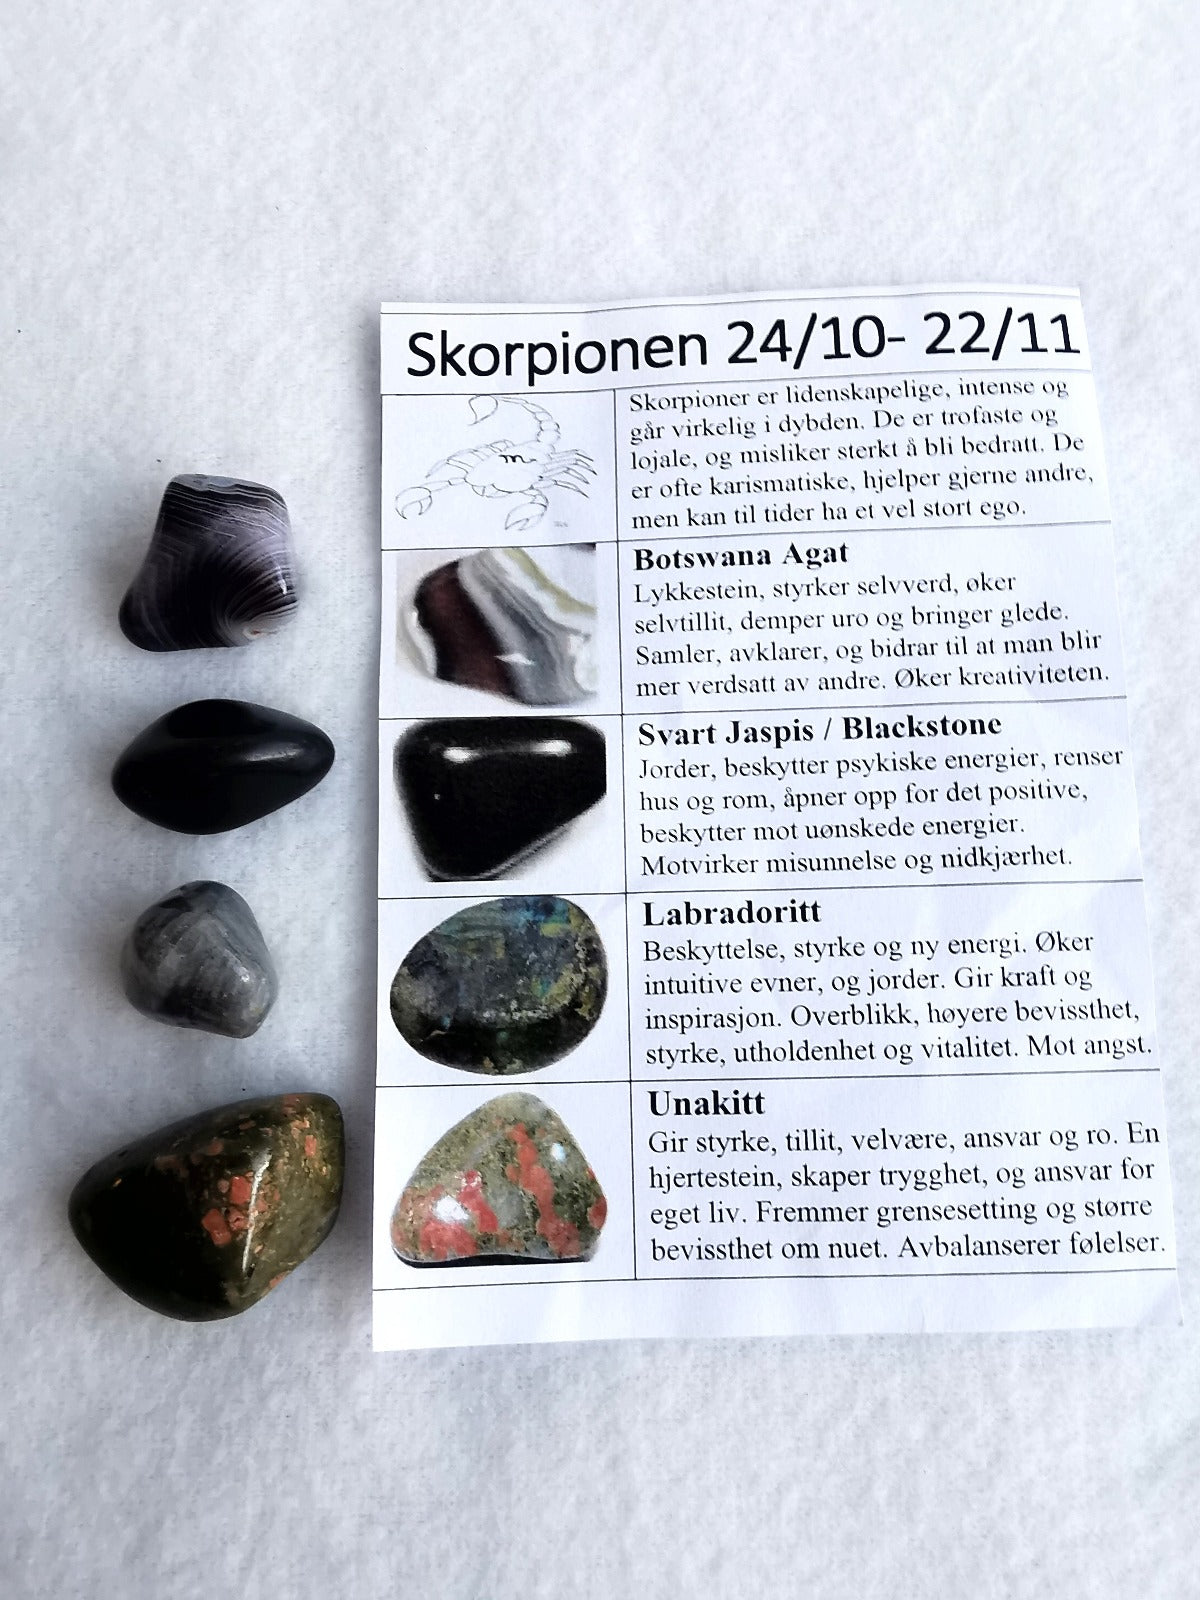 Stjernetegnsett med tromlet stein - Skorpion 24/10 - 22/11